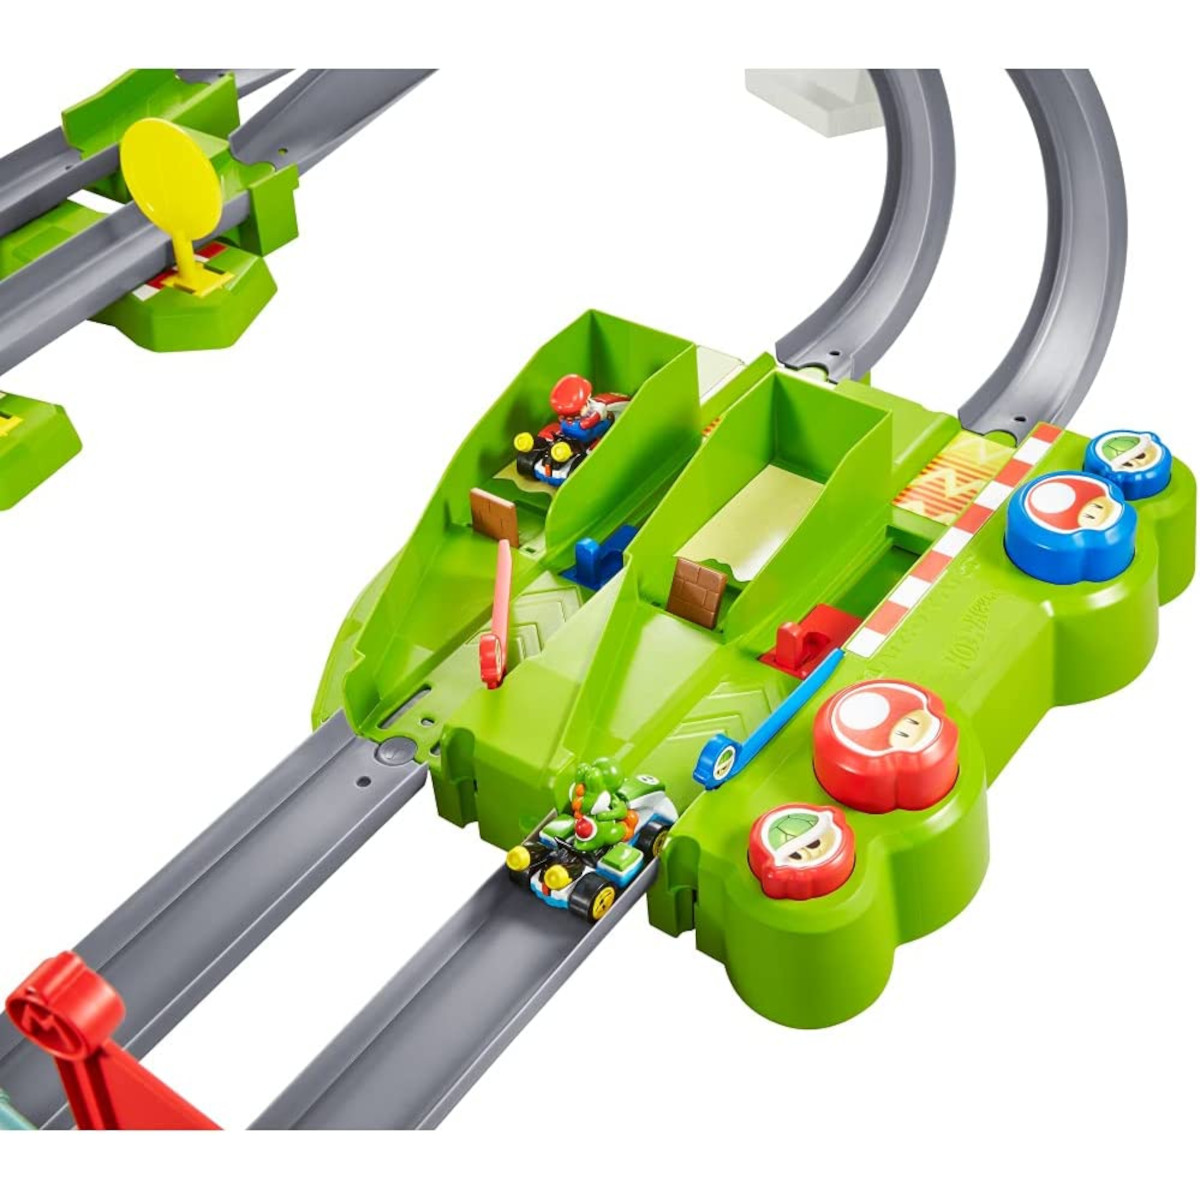 Wheels Spielzeugrennbahn Hot MATTEL 2 Rennbahn - inkl. Spielzeugautos Kart Mario